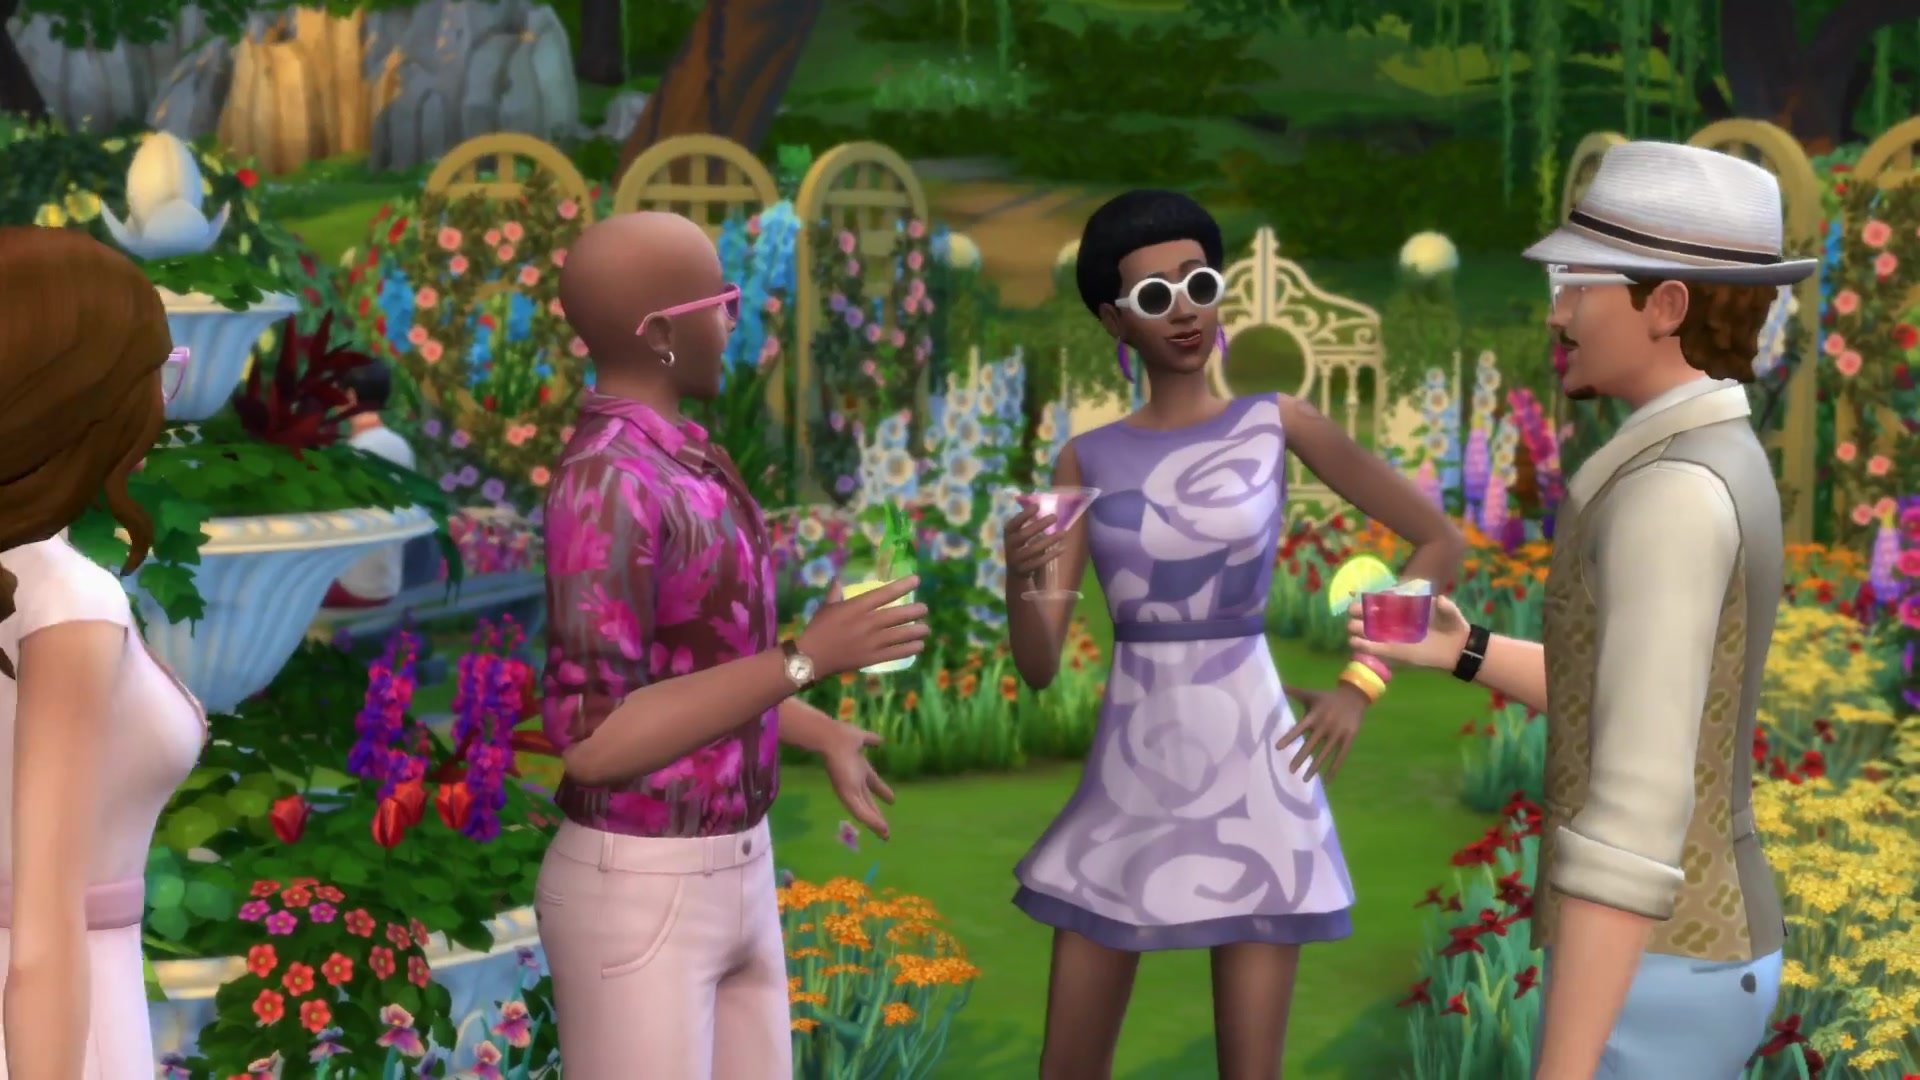 ESD The Sims 4 Romantická zahrada 